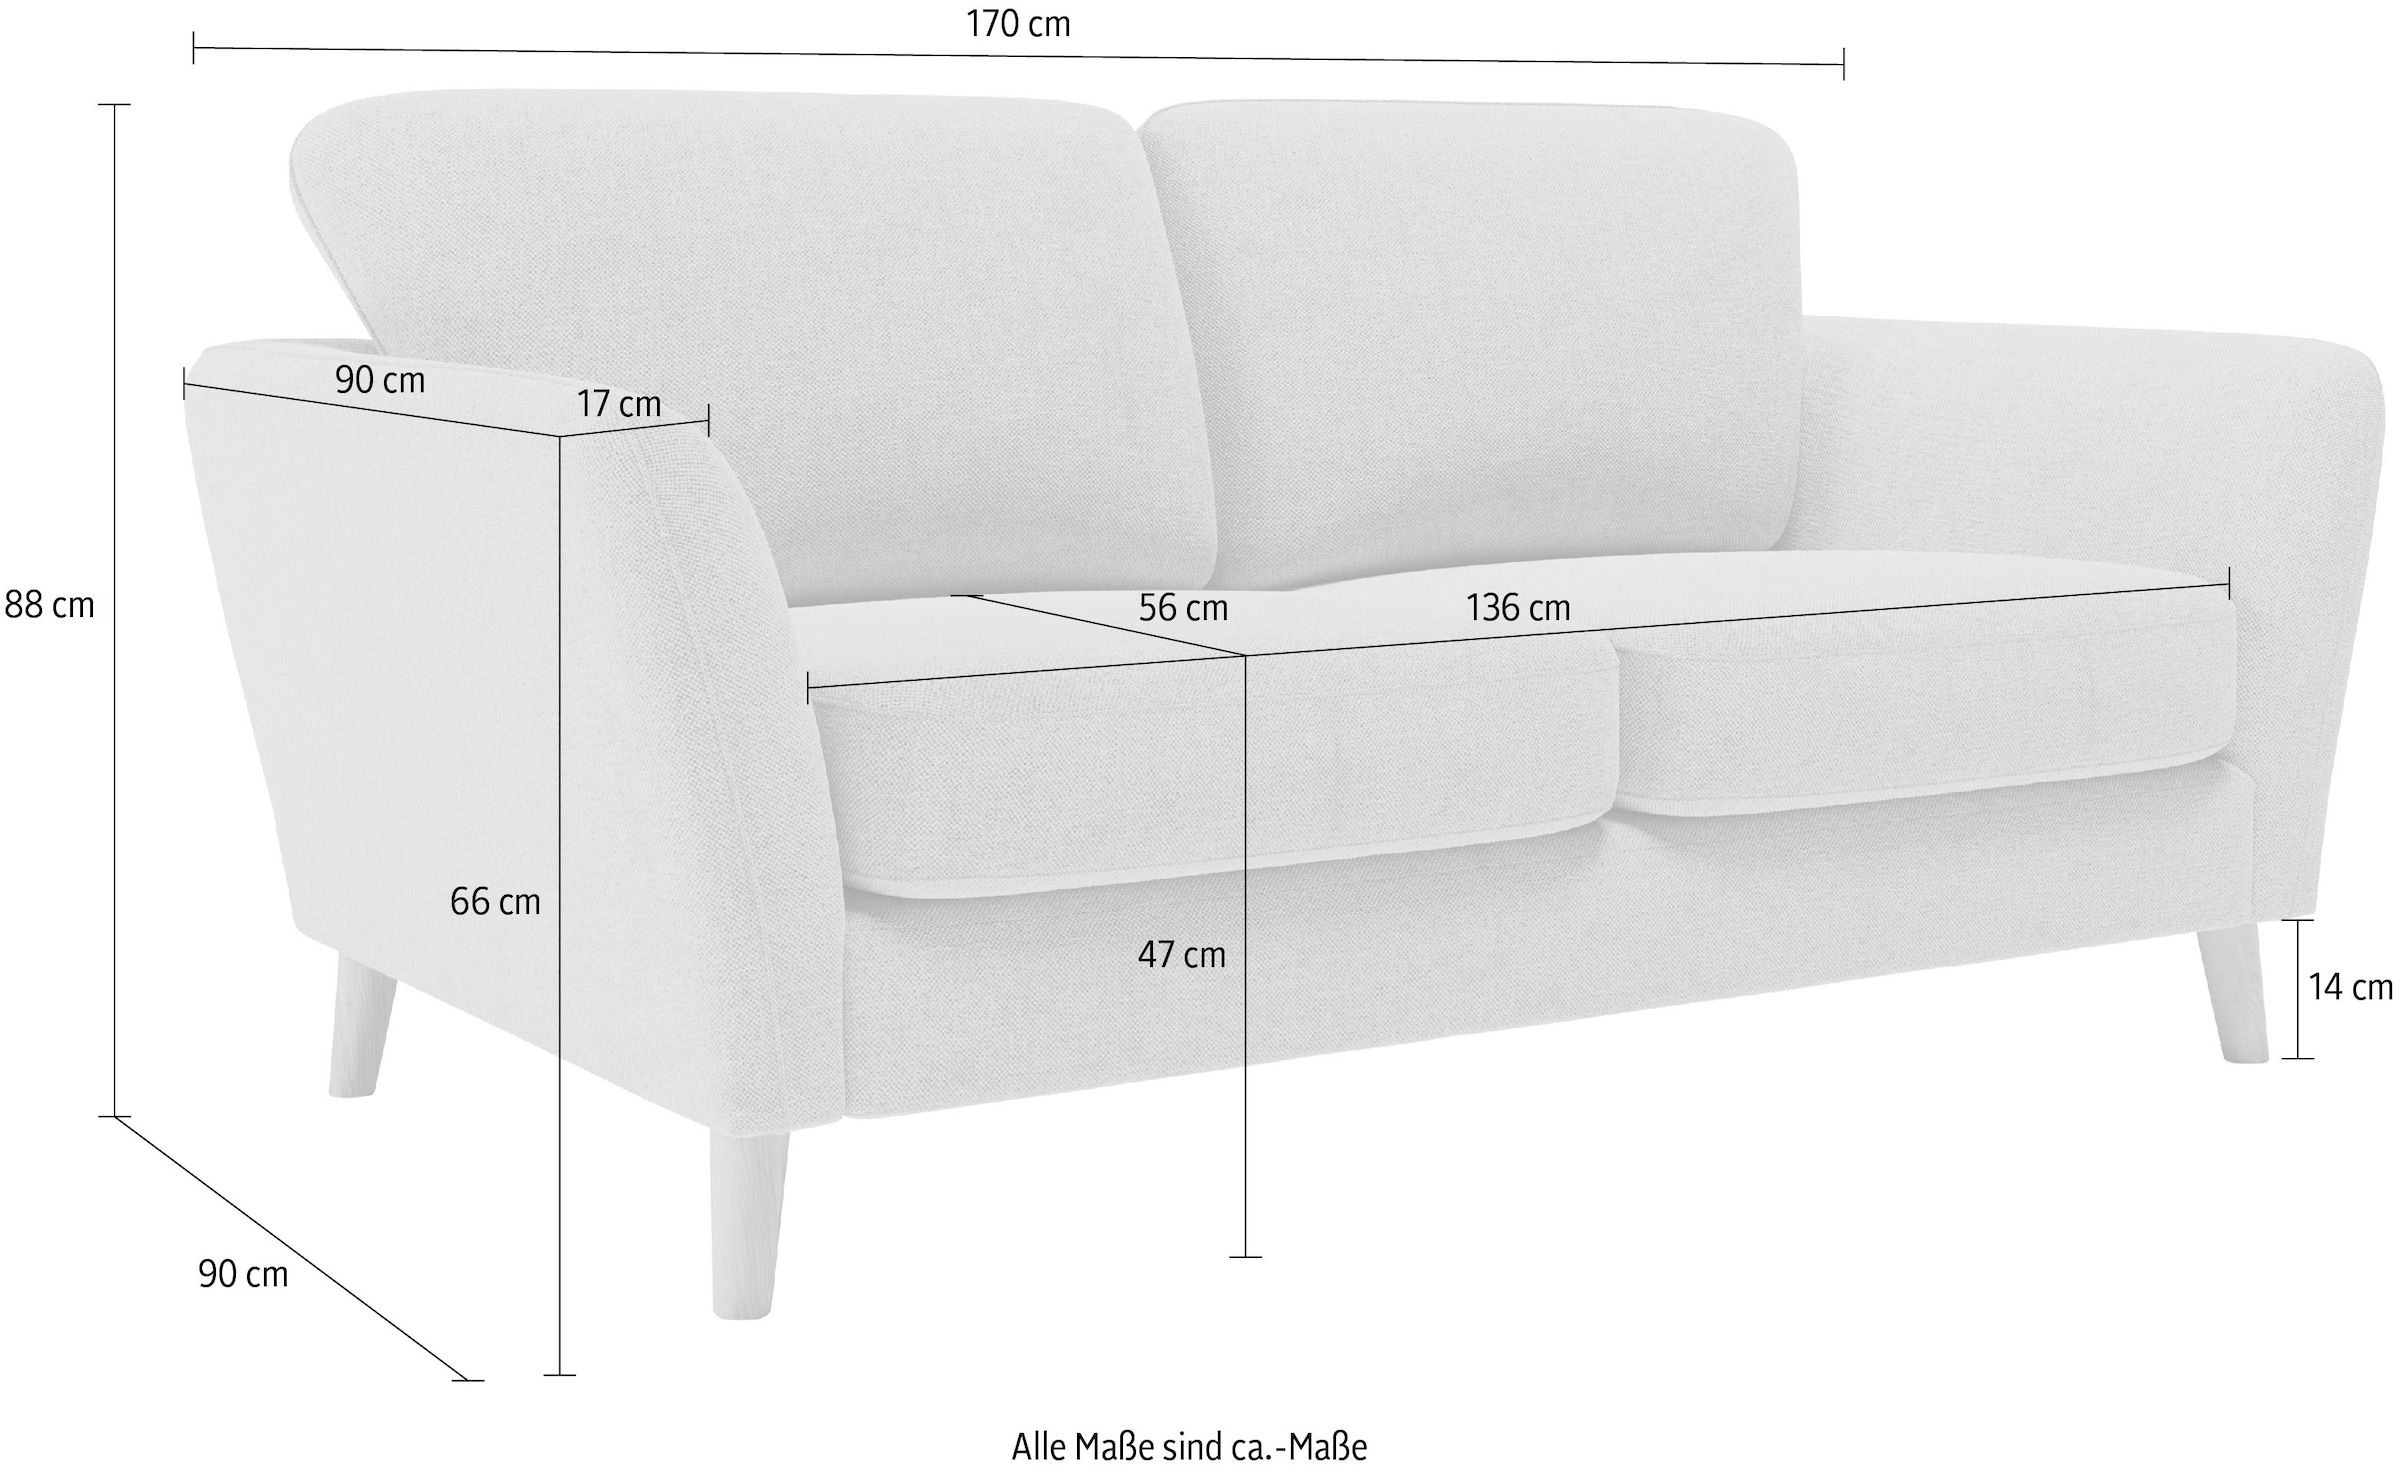 Home affaire 2-Sitzer »MARSEILLE Sofa 170 cm«, mit Massivholzbeinen aus Eiche, verschiedene Bezüge und Farbvarianten